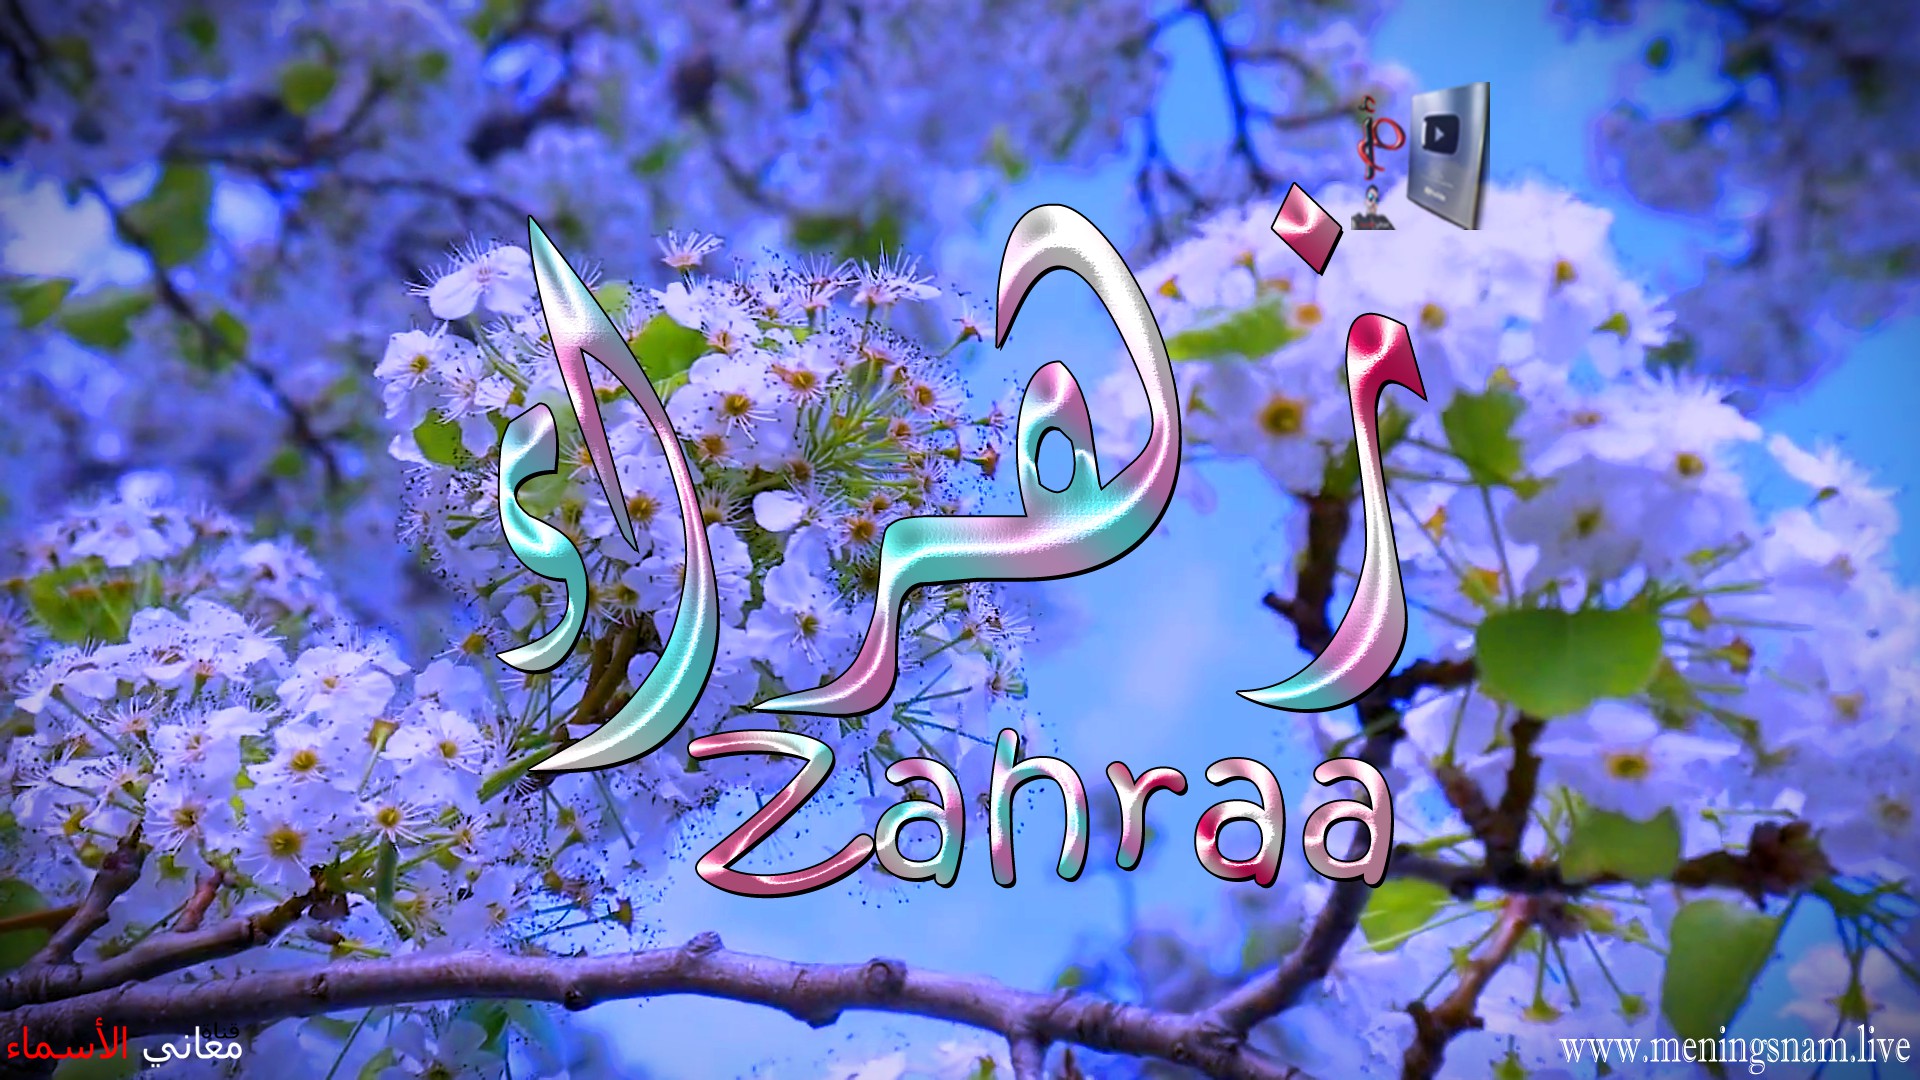 معنى اسم, زهراء, وصفات, حاملة, هذا الاسم, Zahraa,